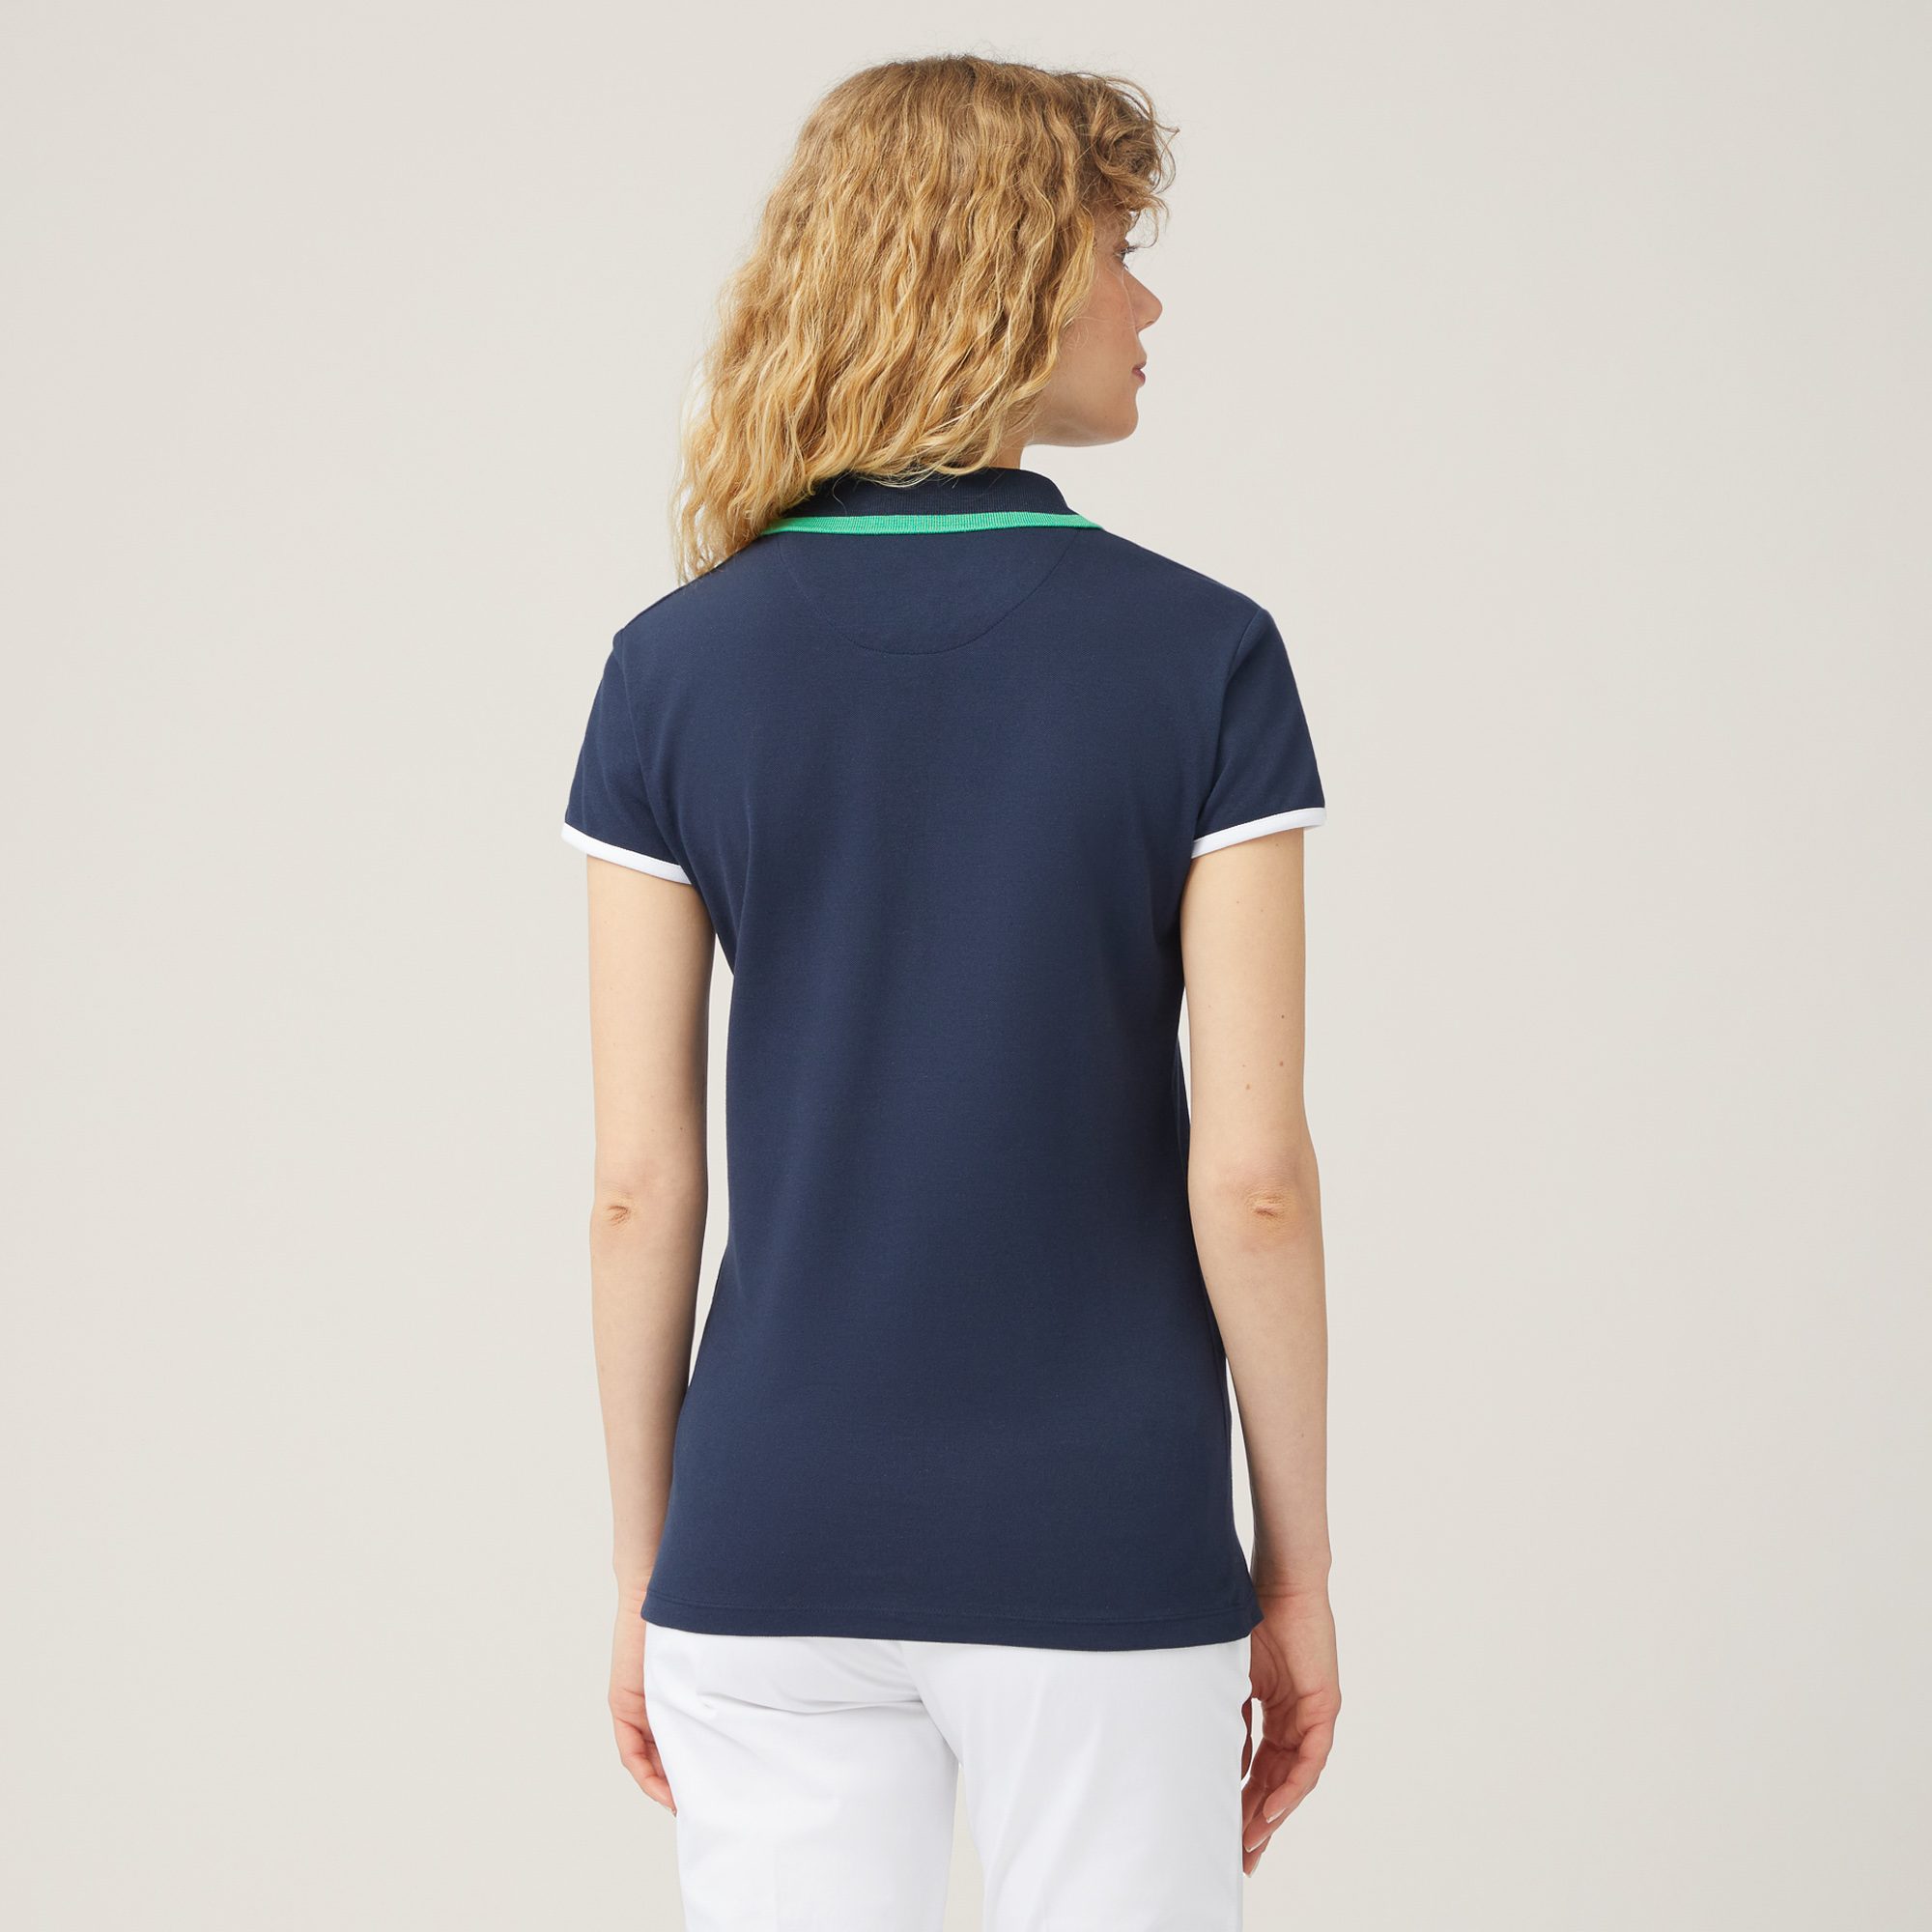 Poloshirt ohne Knöpfe, Blau, large image number 1